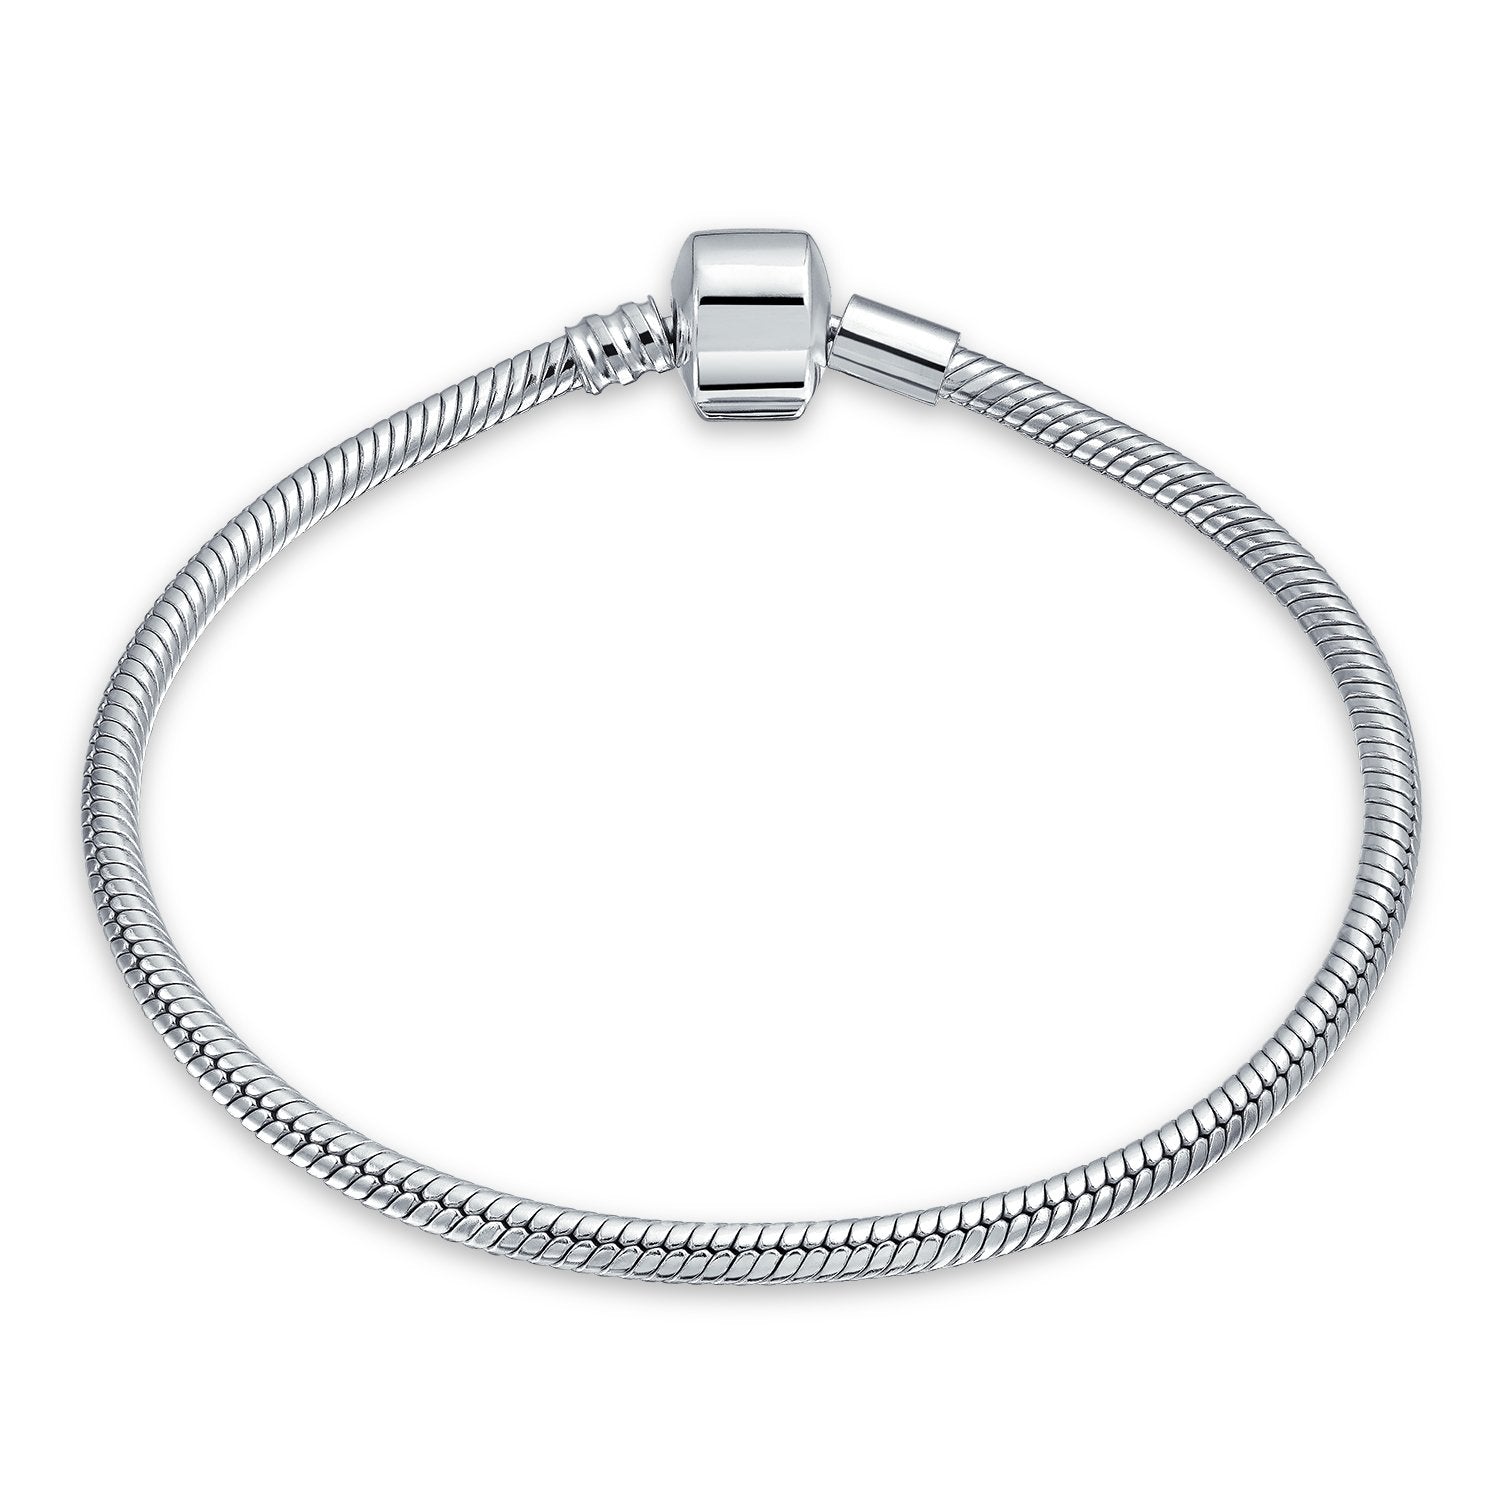 Snake Chain Starter Charm European Beads Bracelet Sterling Silver - Joyeria Lady